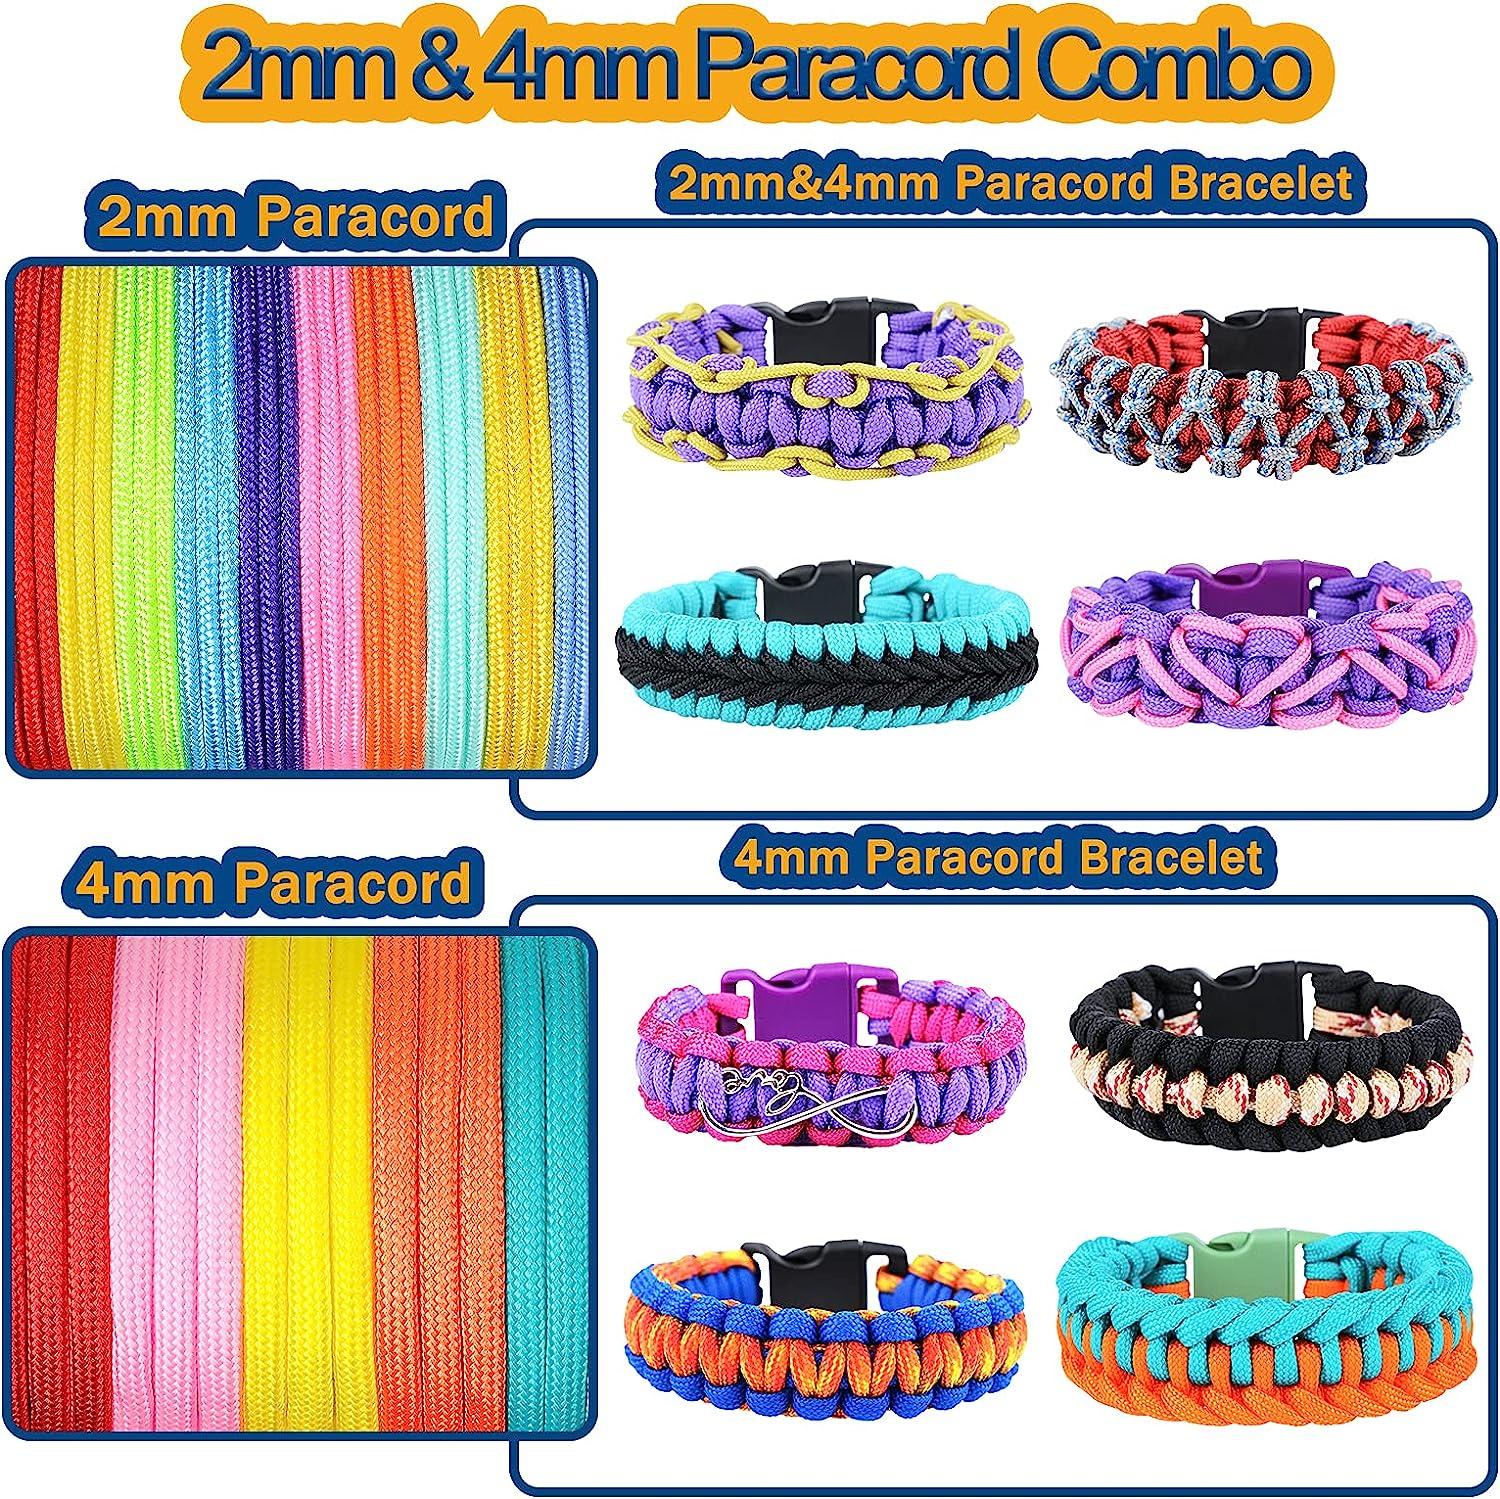 MONOBIN Paracord Bracelets Kit - 30 Colors 4mm Paracord & 6 Colors